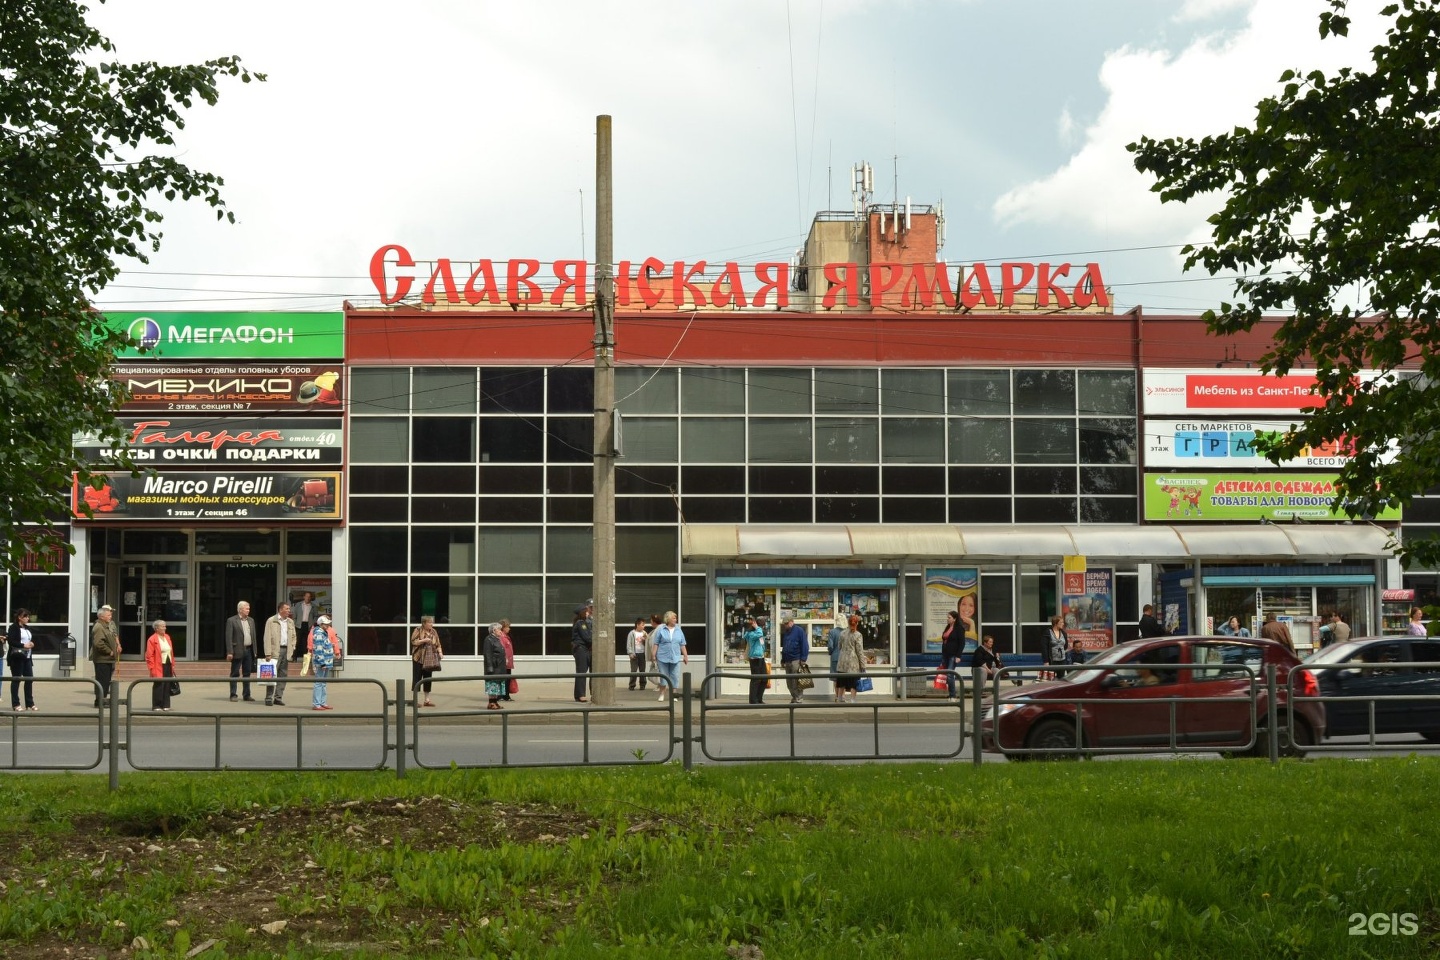 В Великом Новгороде Открывается Магазин